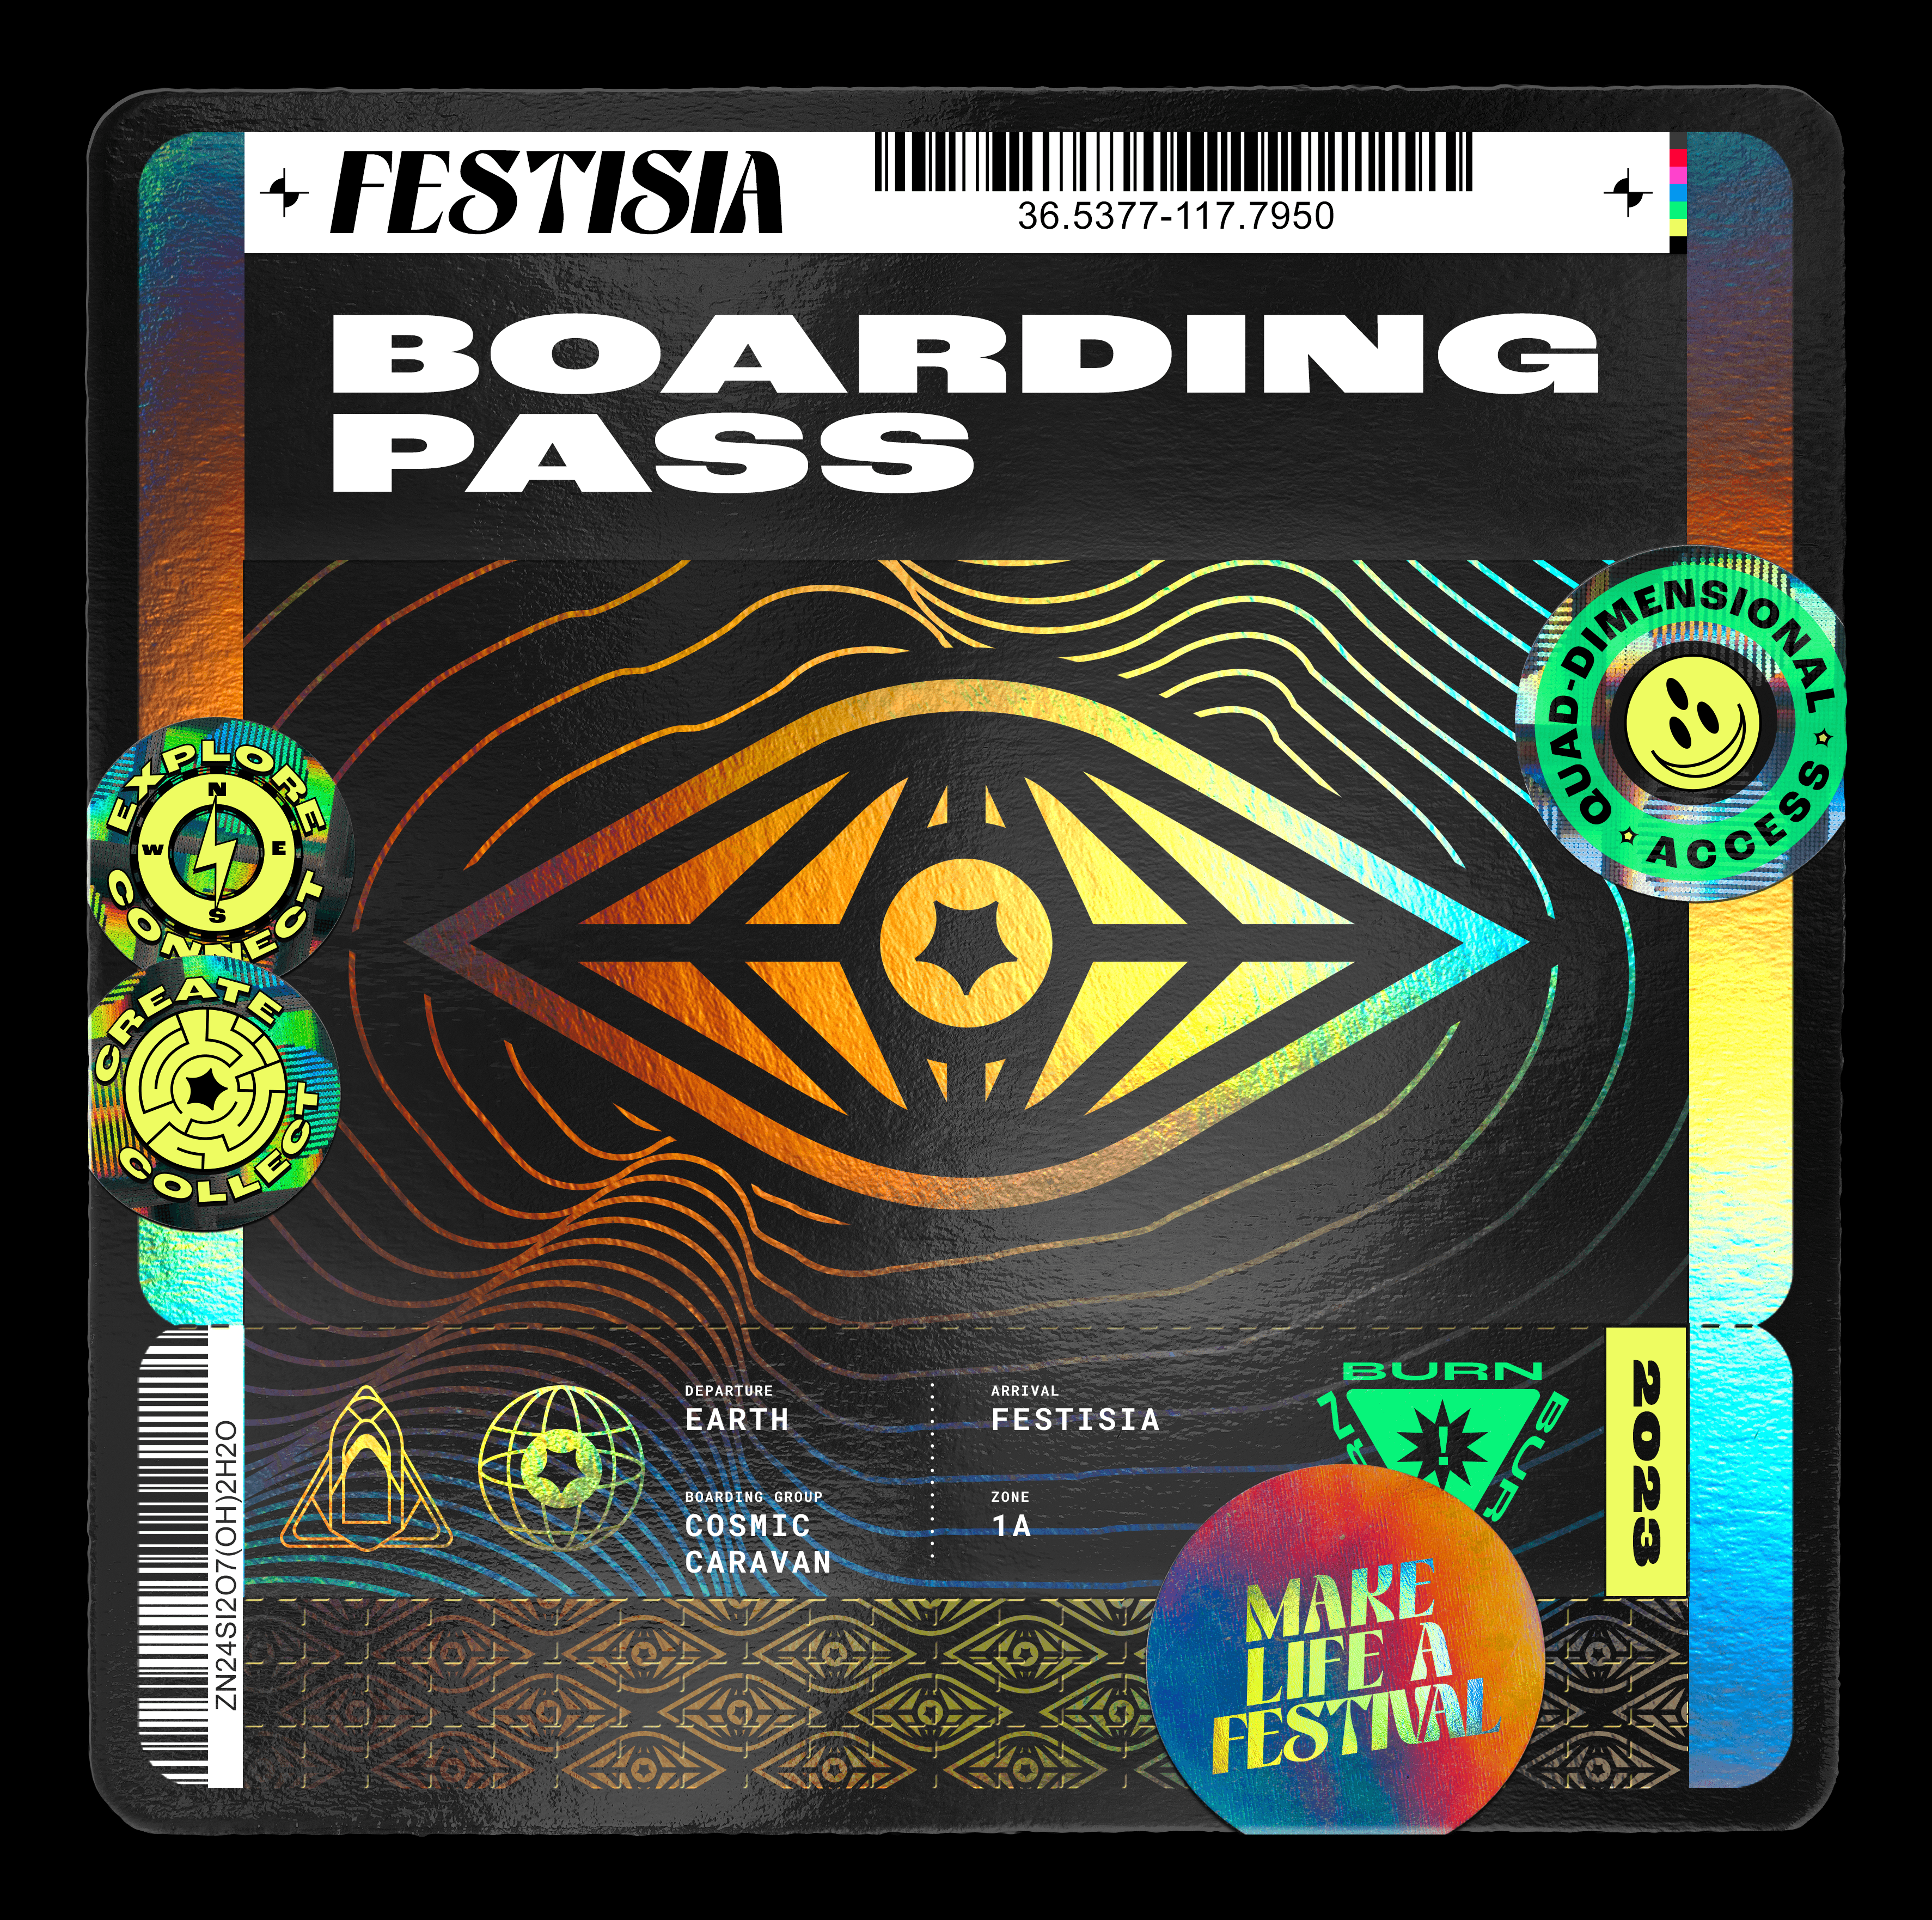 Festisia Boarding Pass: Zone 1A